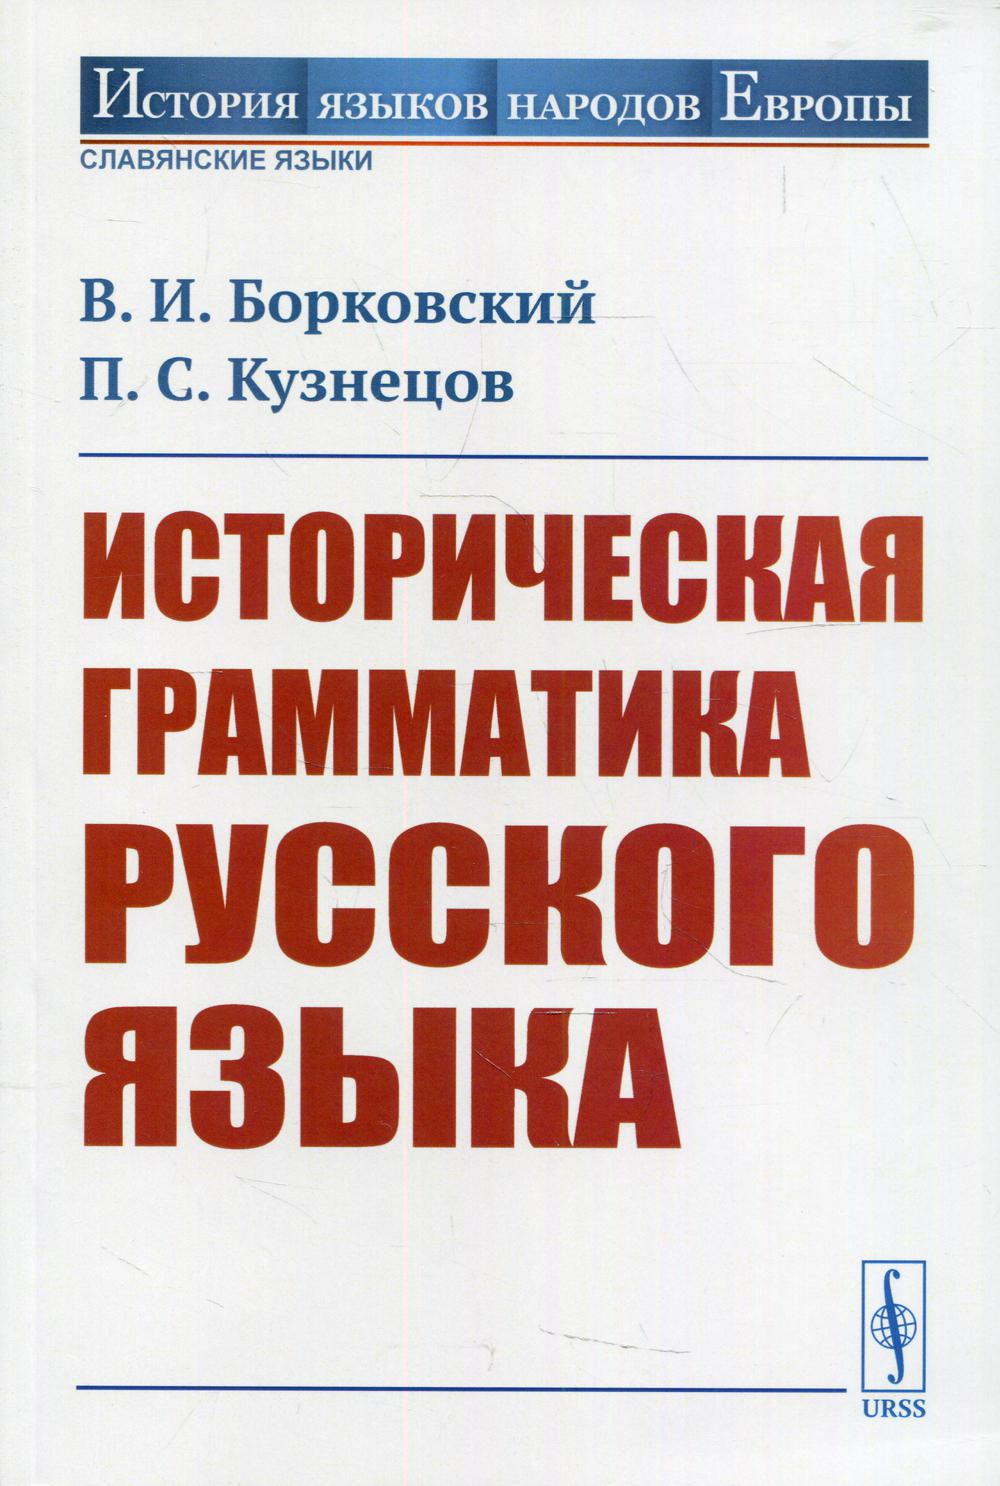 фото Книга историческая грамматика русского языка ленанд